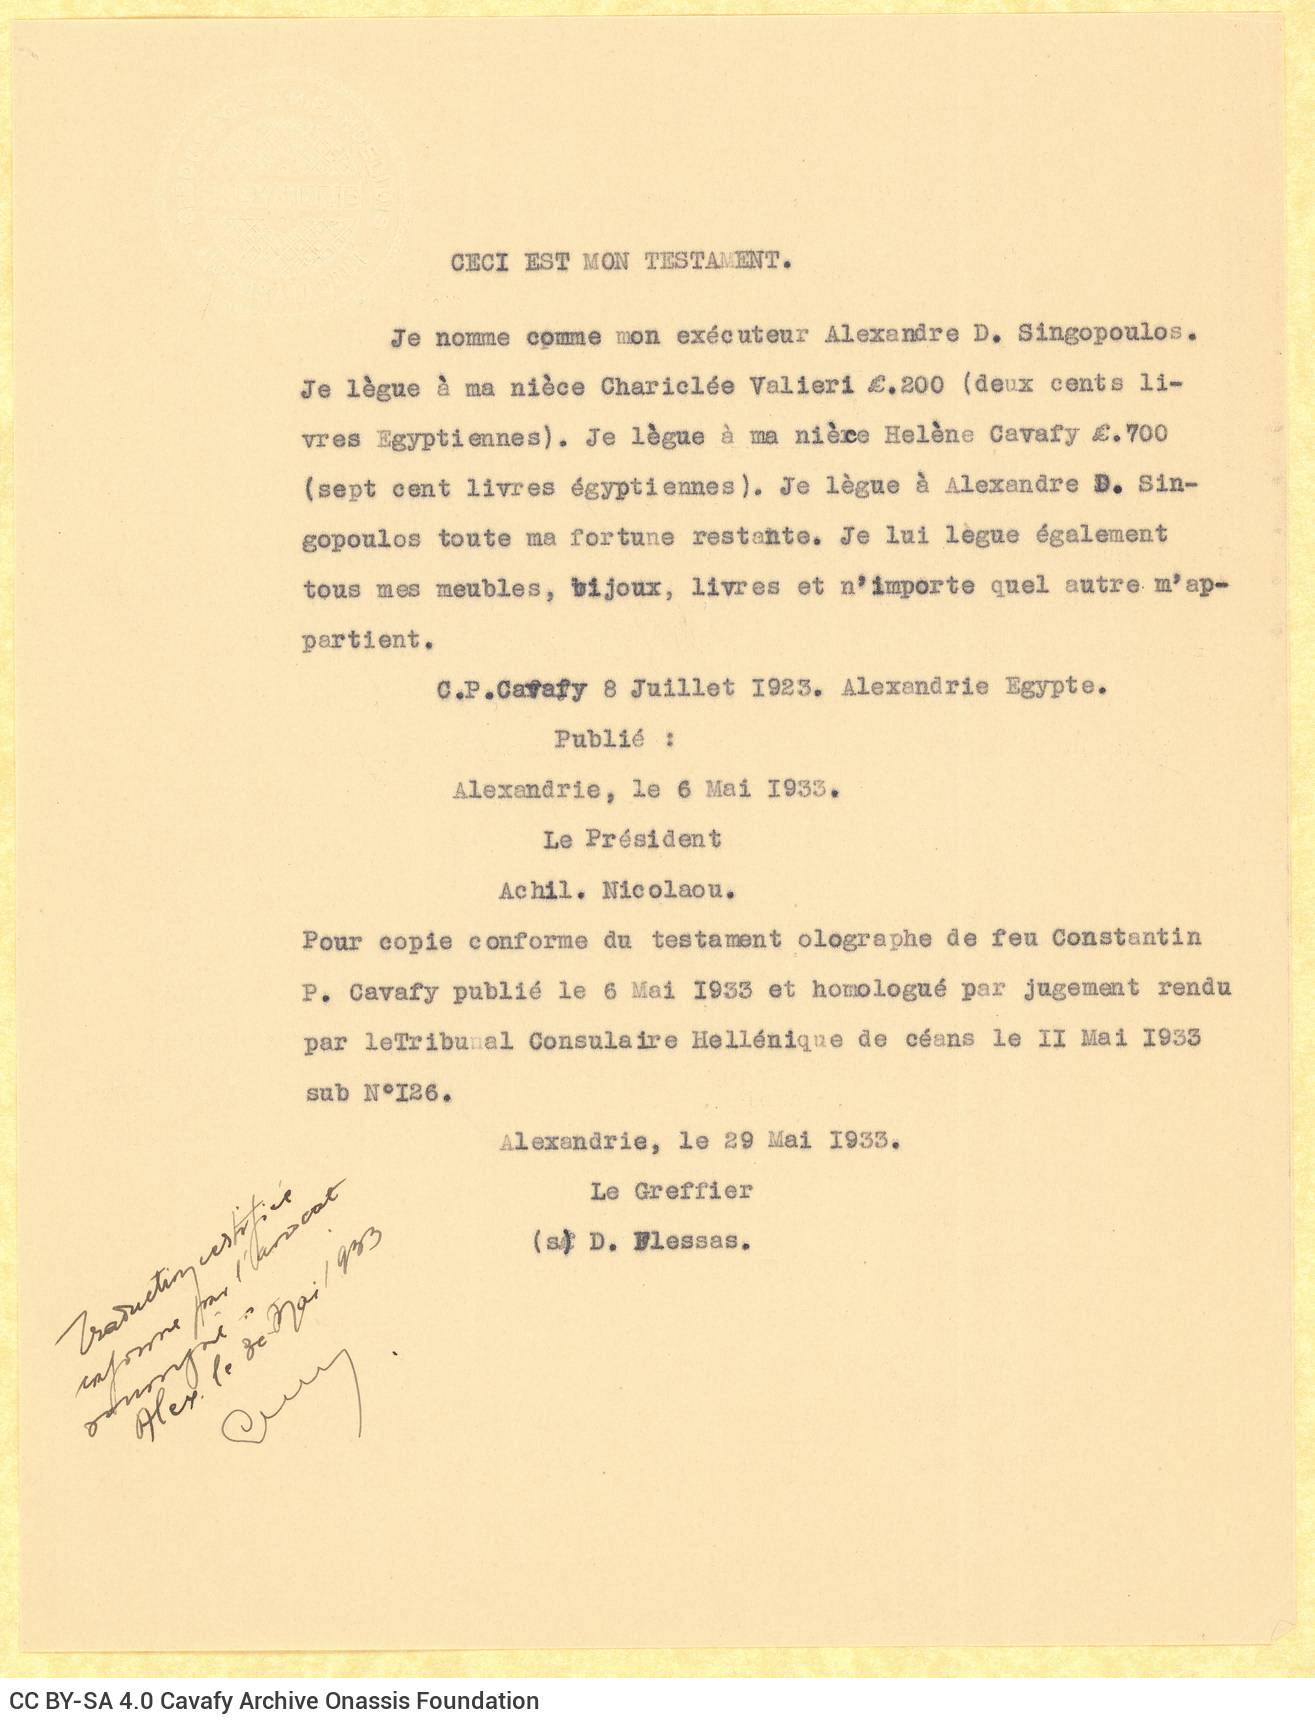 Δακτυλόγραφο αντίγραφο της απόφασης αρ. 126 του Ελληνικού Προξενικού 